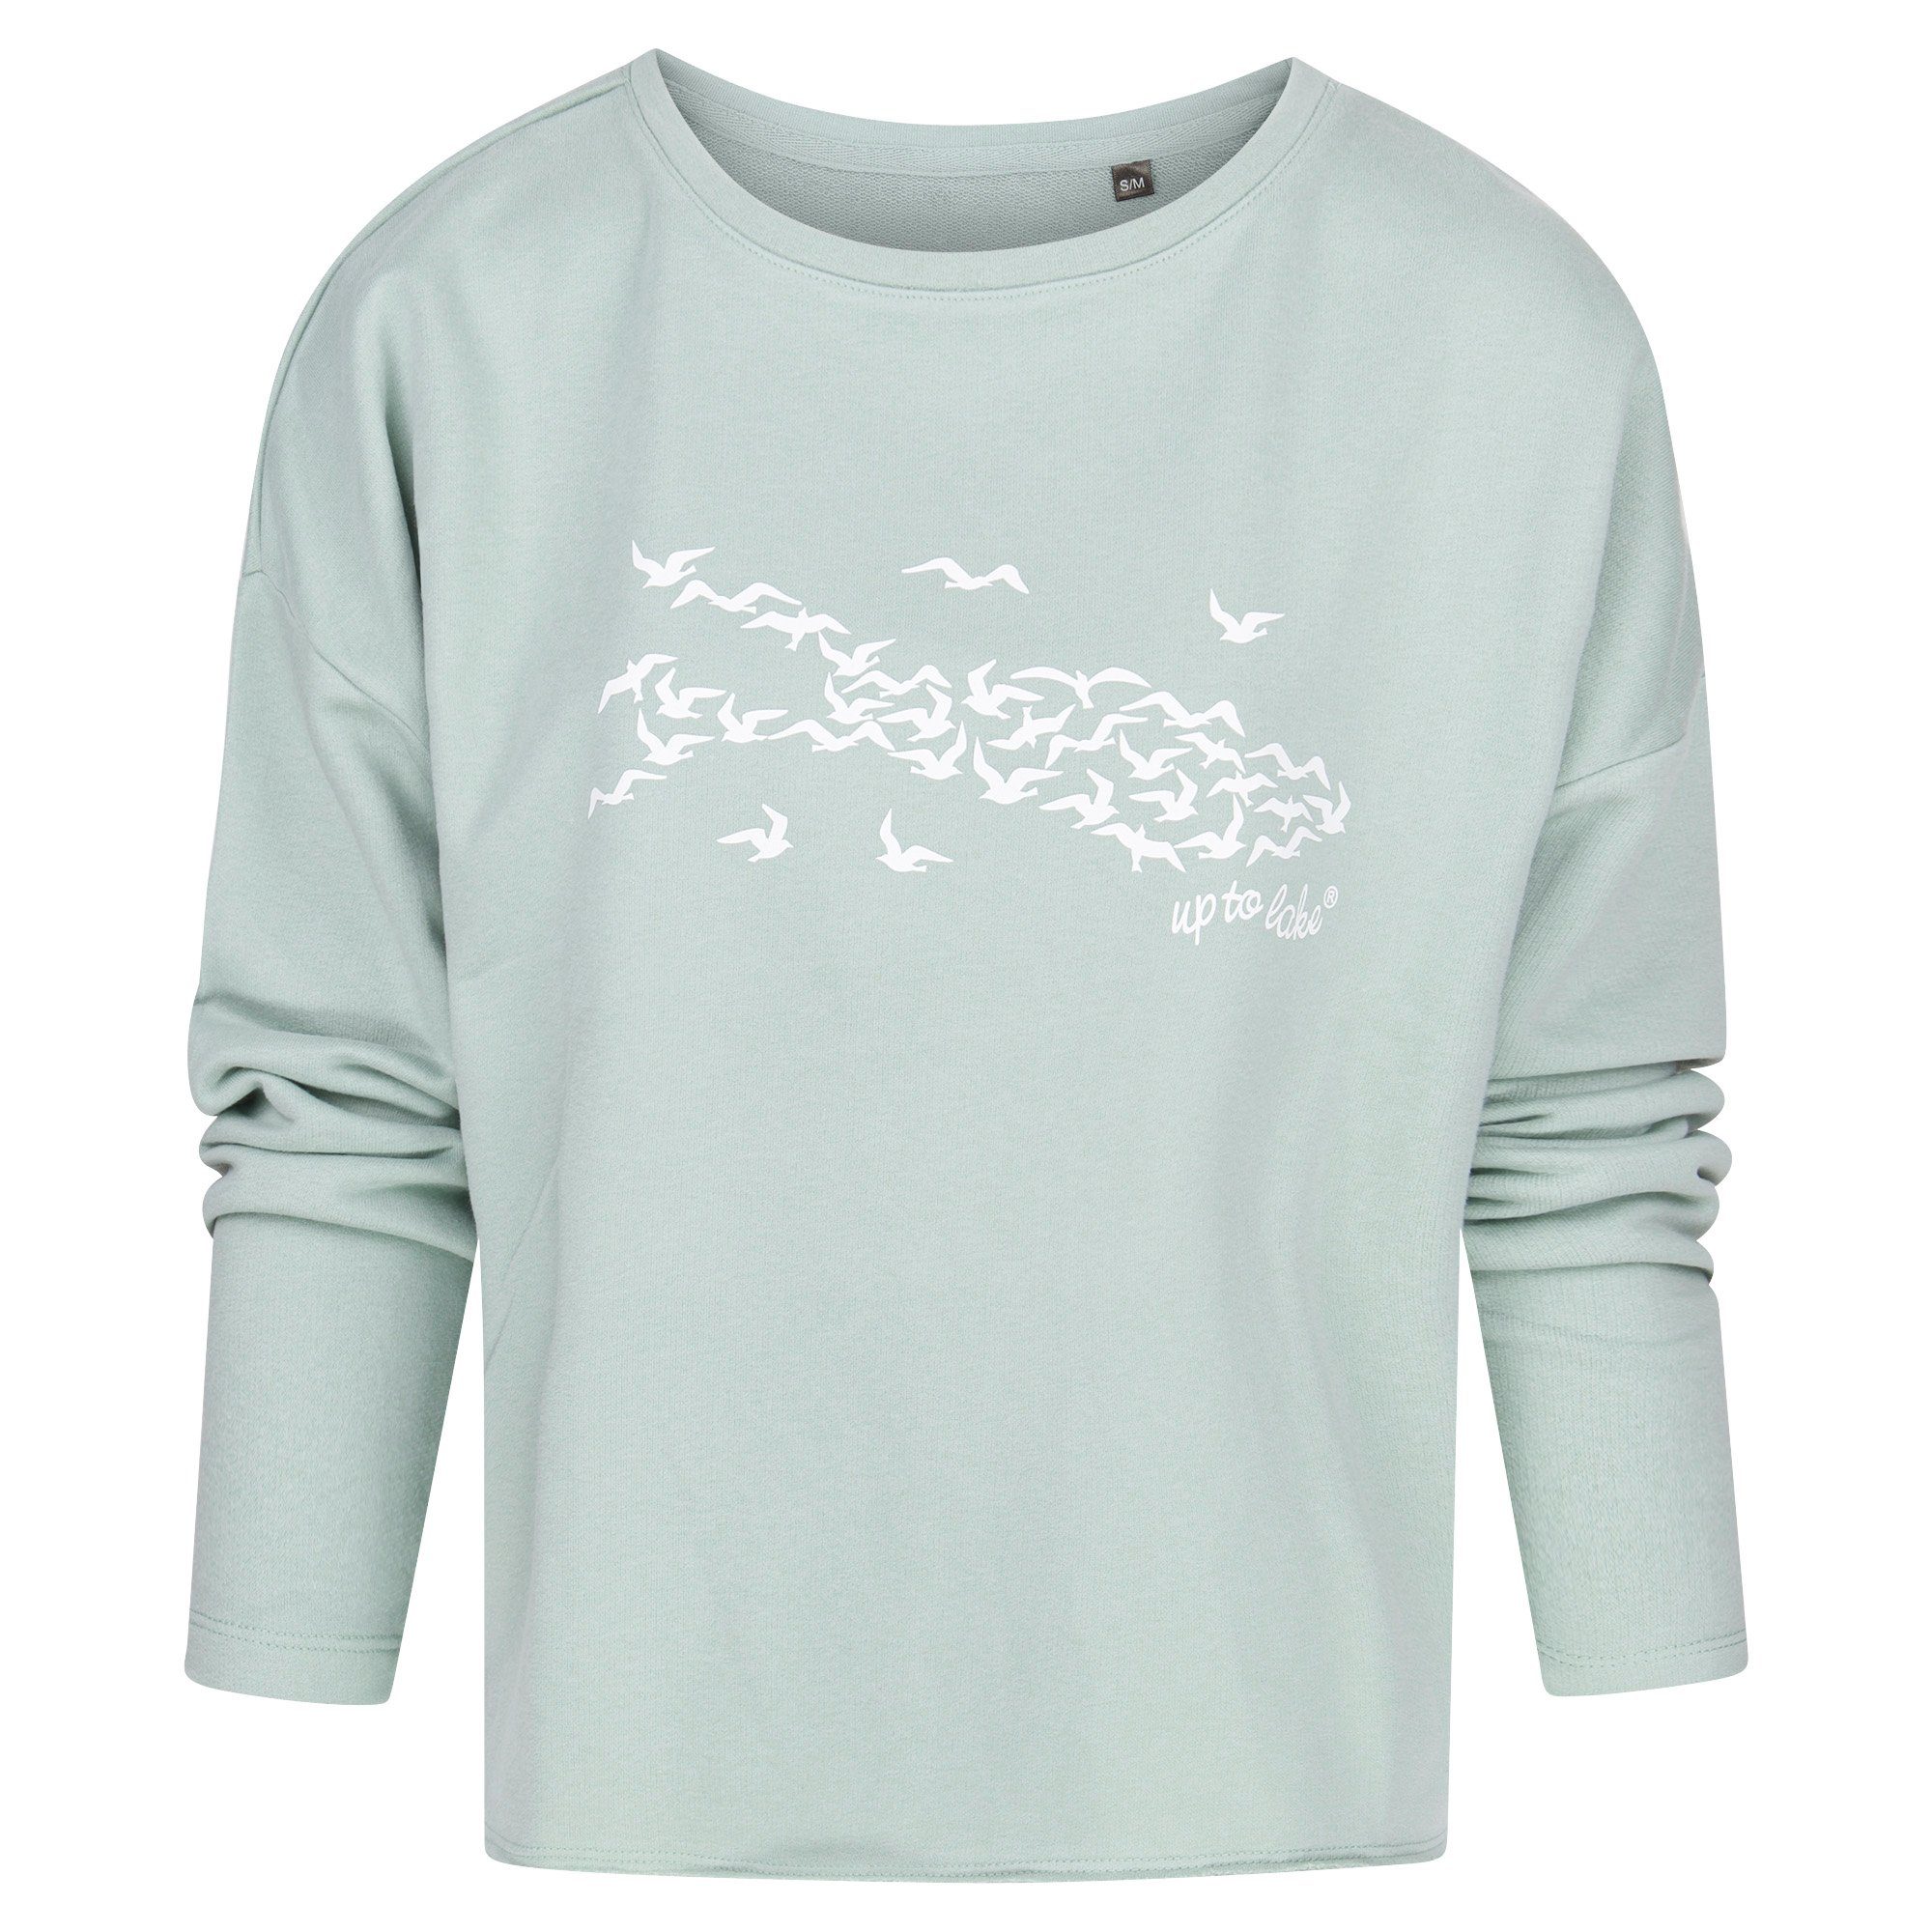 für Sage/Weiß "Mövensee-Bodensee" aus mit Sweatshirt Design Baumwollstoff Damen weichem uptolake design